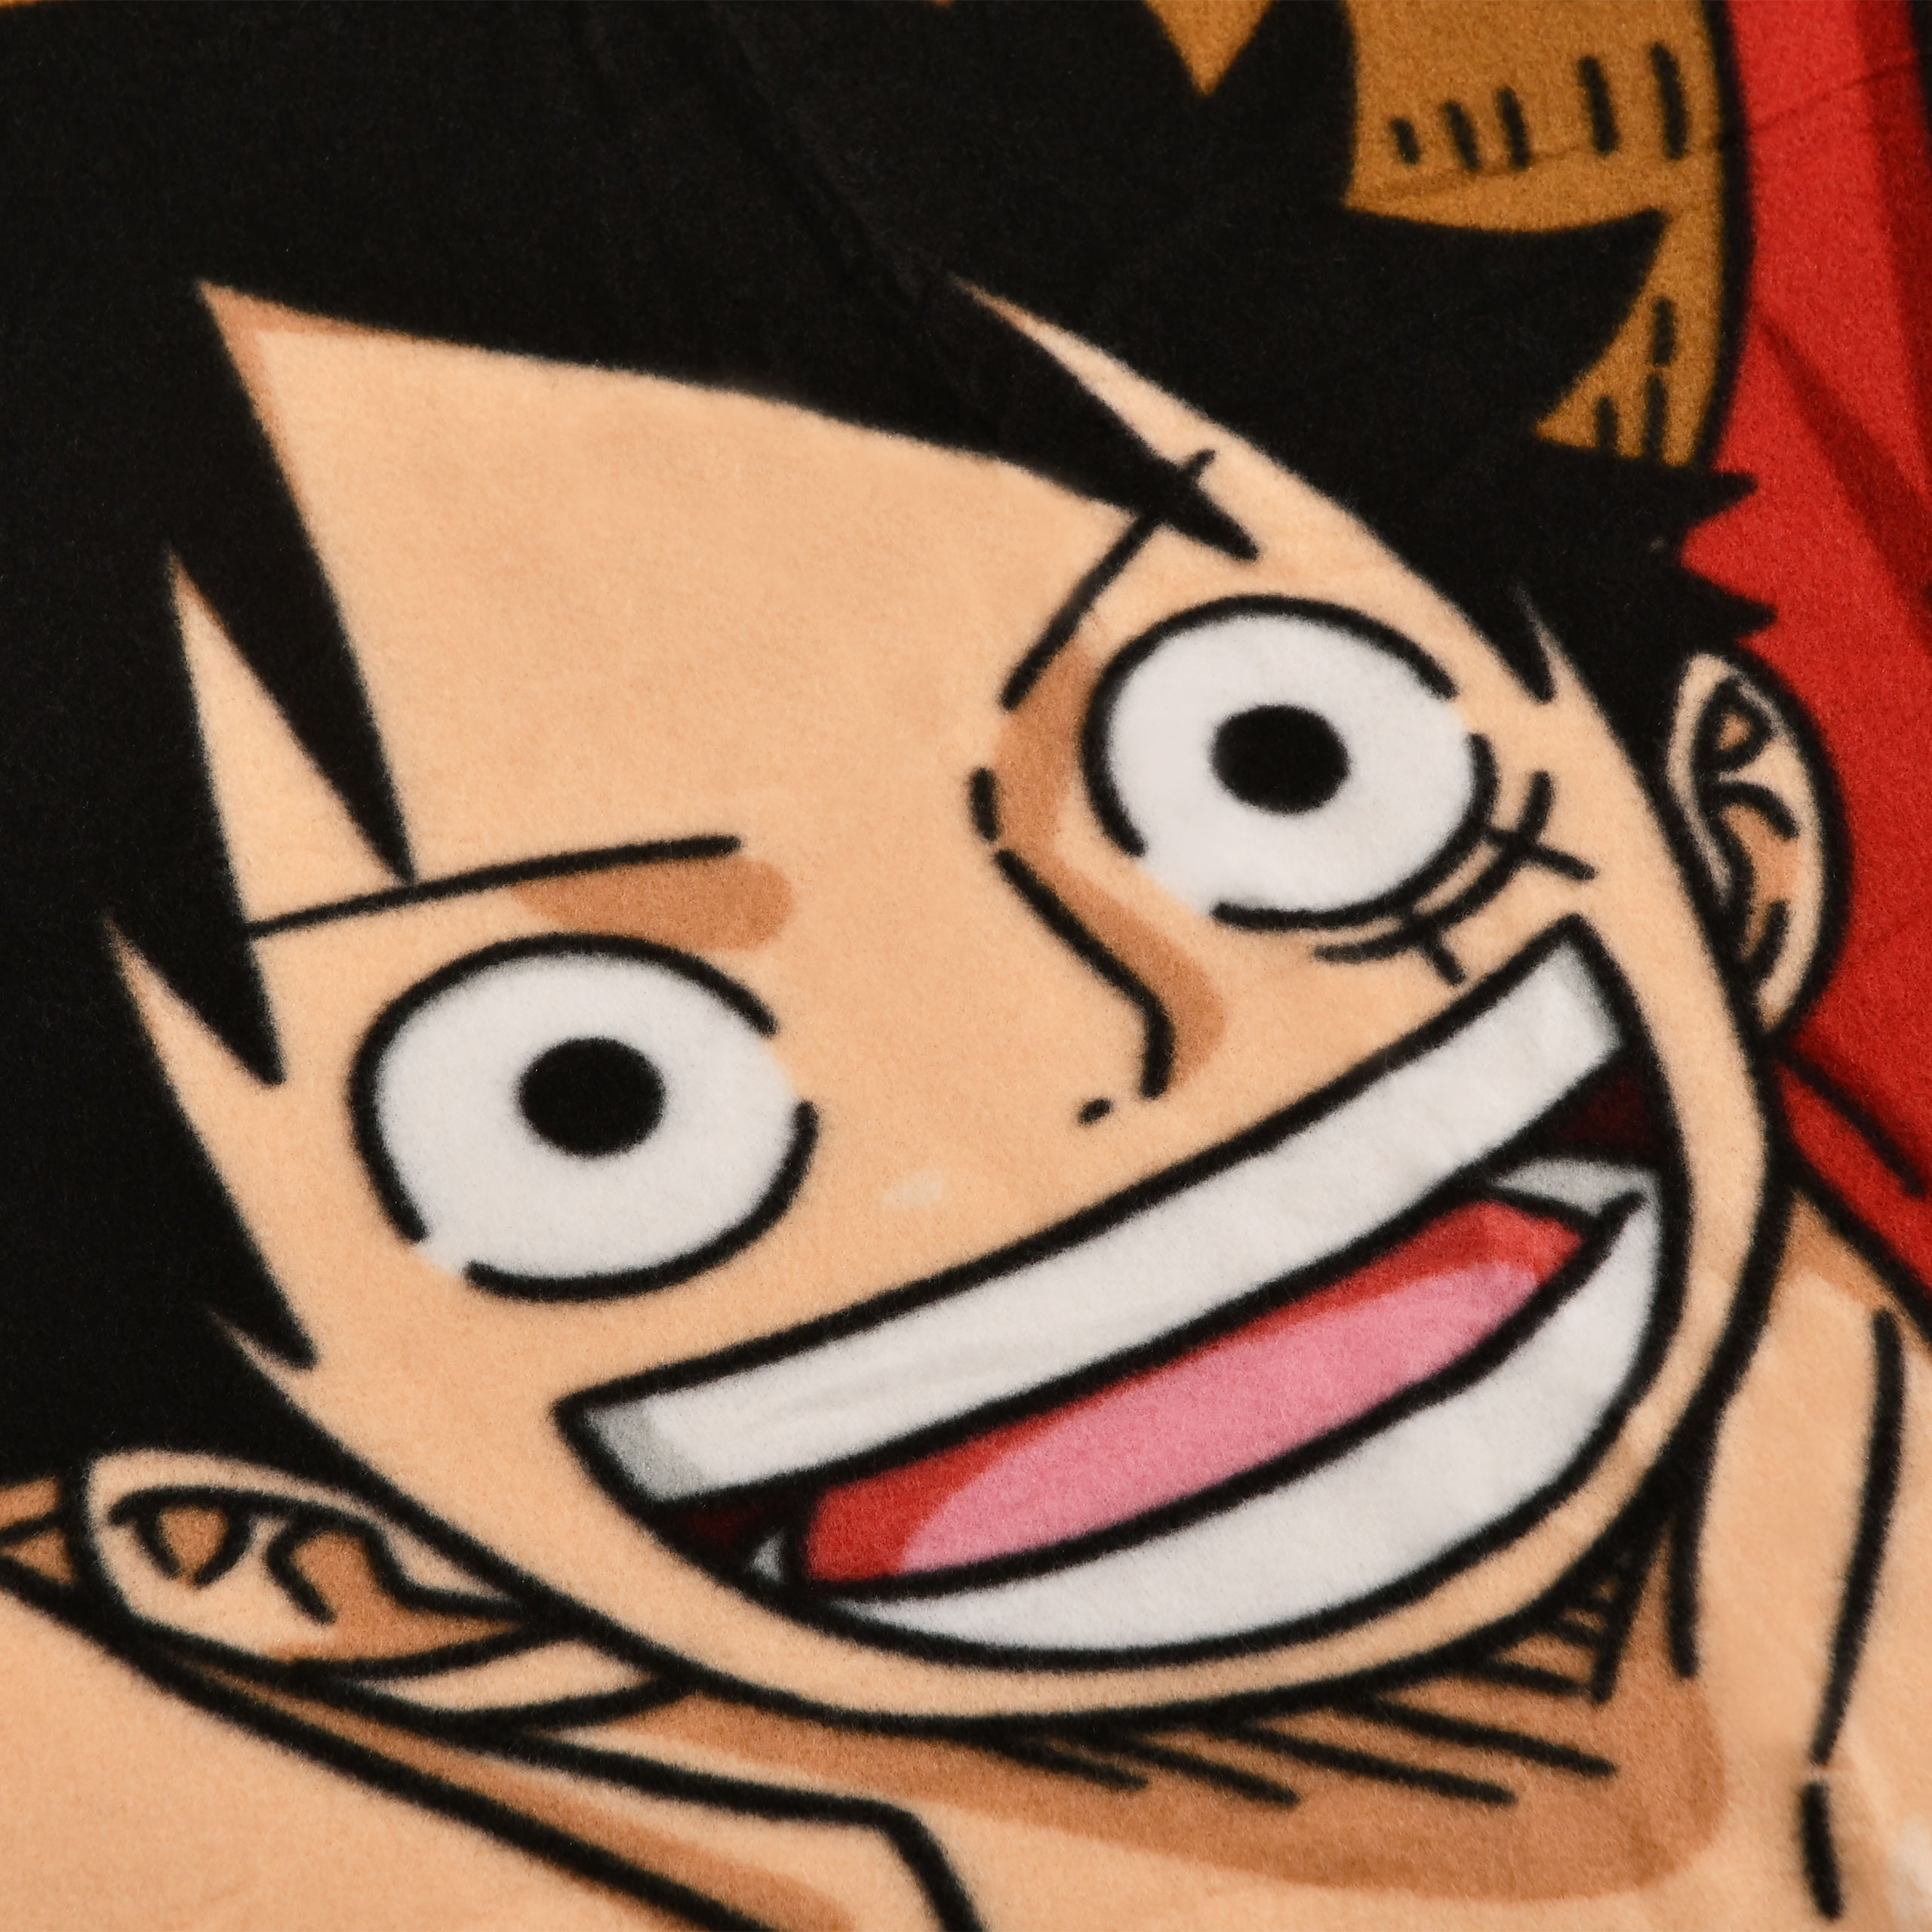 One Piece - Monkey D. Luffy Deken